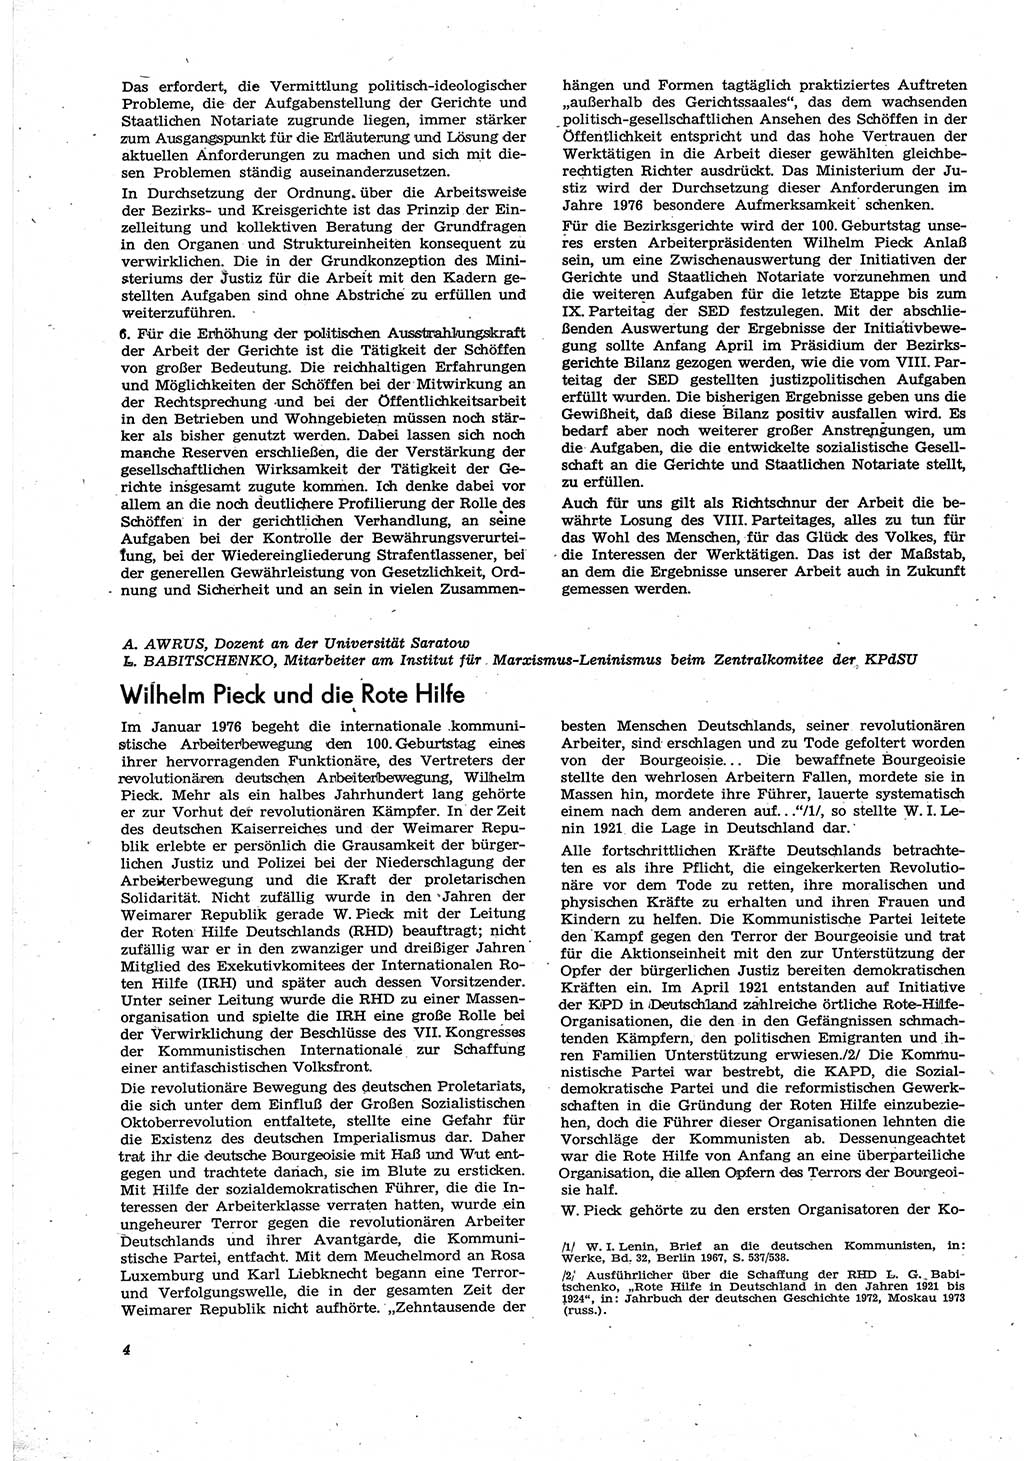 Neue Justiz (NJ), Zeitschrift für Recht und Rechtswissenschaft [Deutsche Demokratische Republik (DDR)], 30. Jahrgang 1976, Seite 4 (NJ DDR 1976, S. 4)